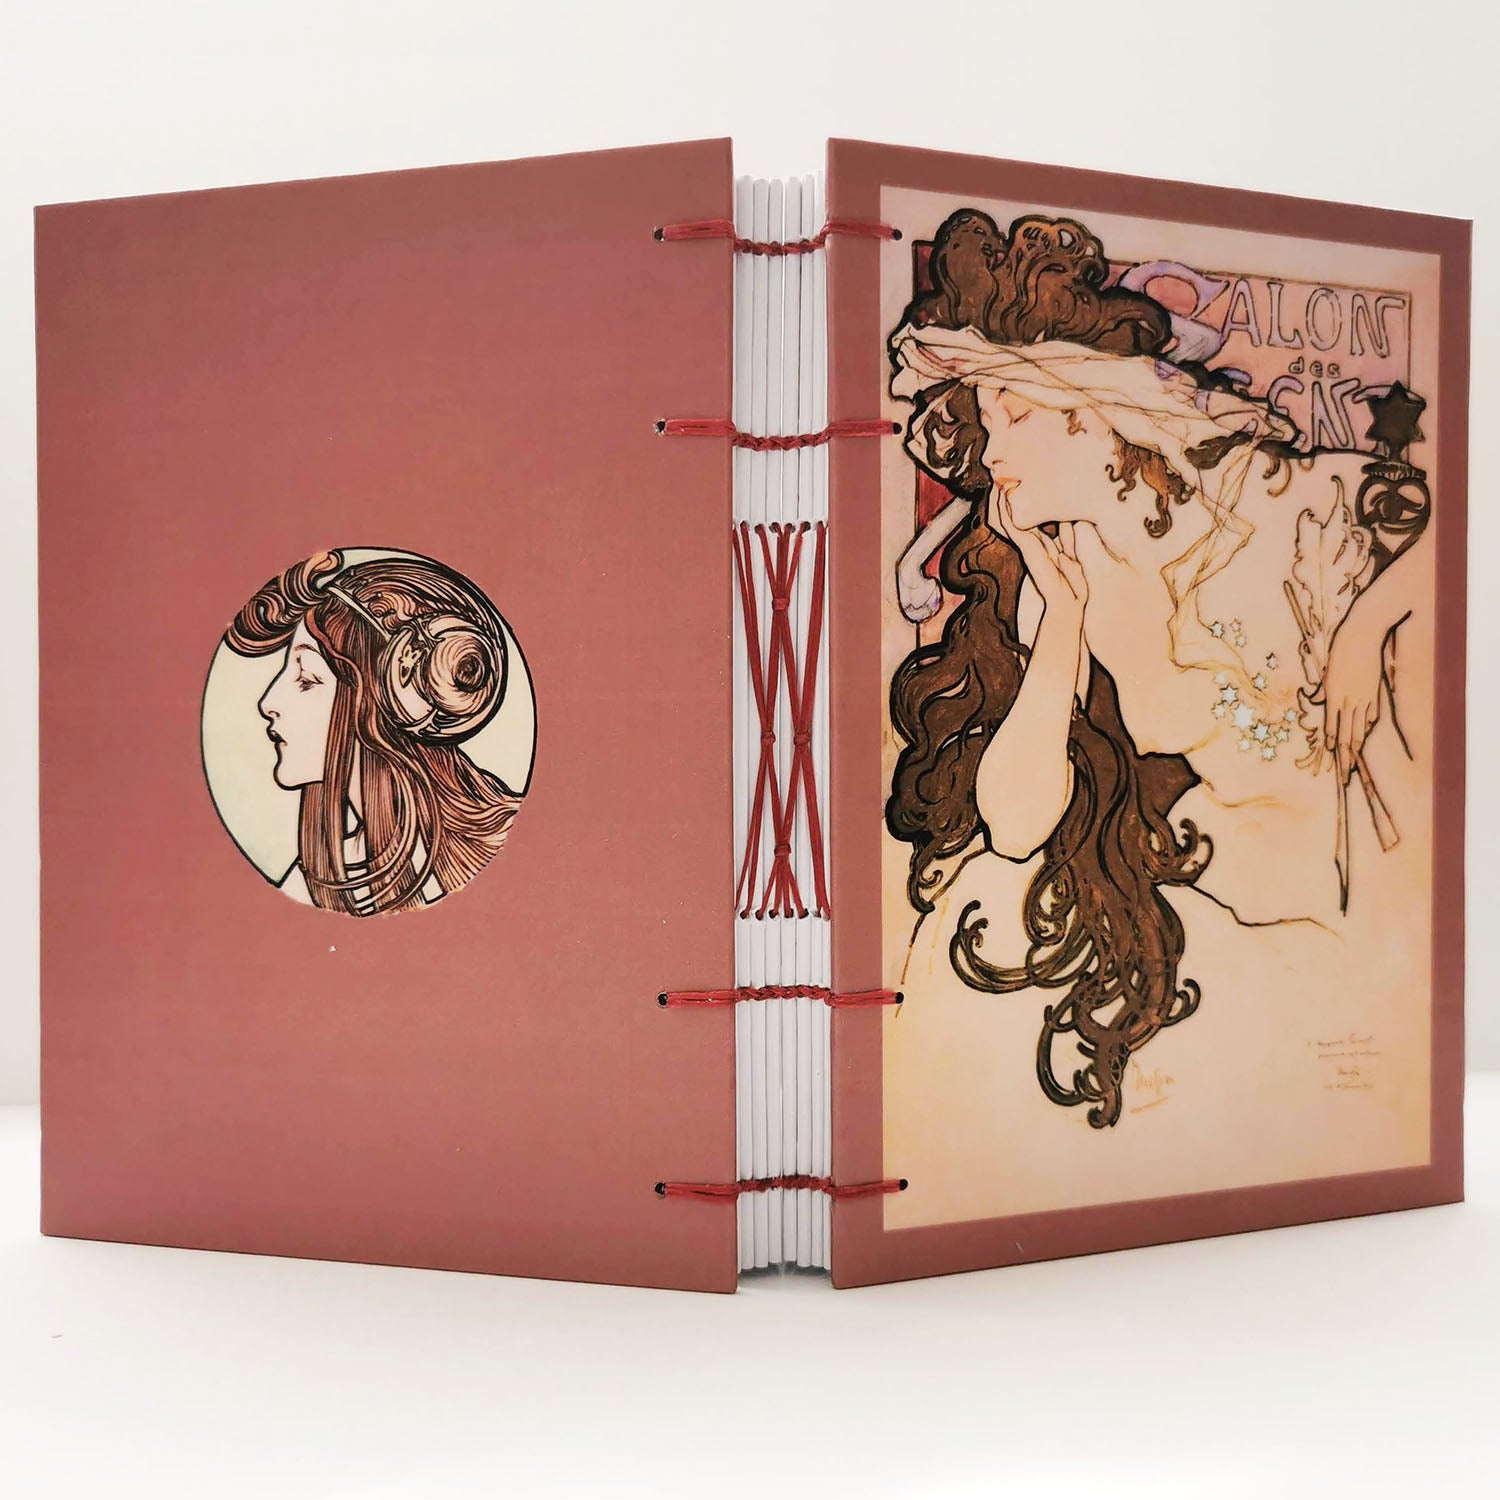 Χειροποίητo Σημειωματάριo με Βυζαντινή Βιβλιοδεσία - Alfons Mucha - Salon des Cent poster